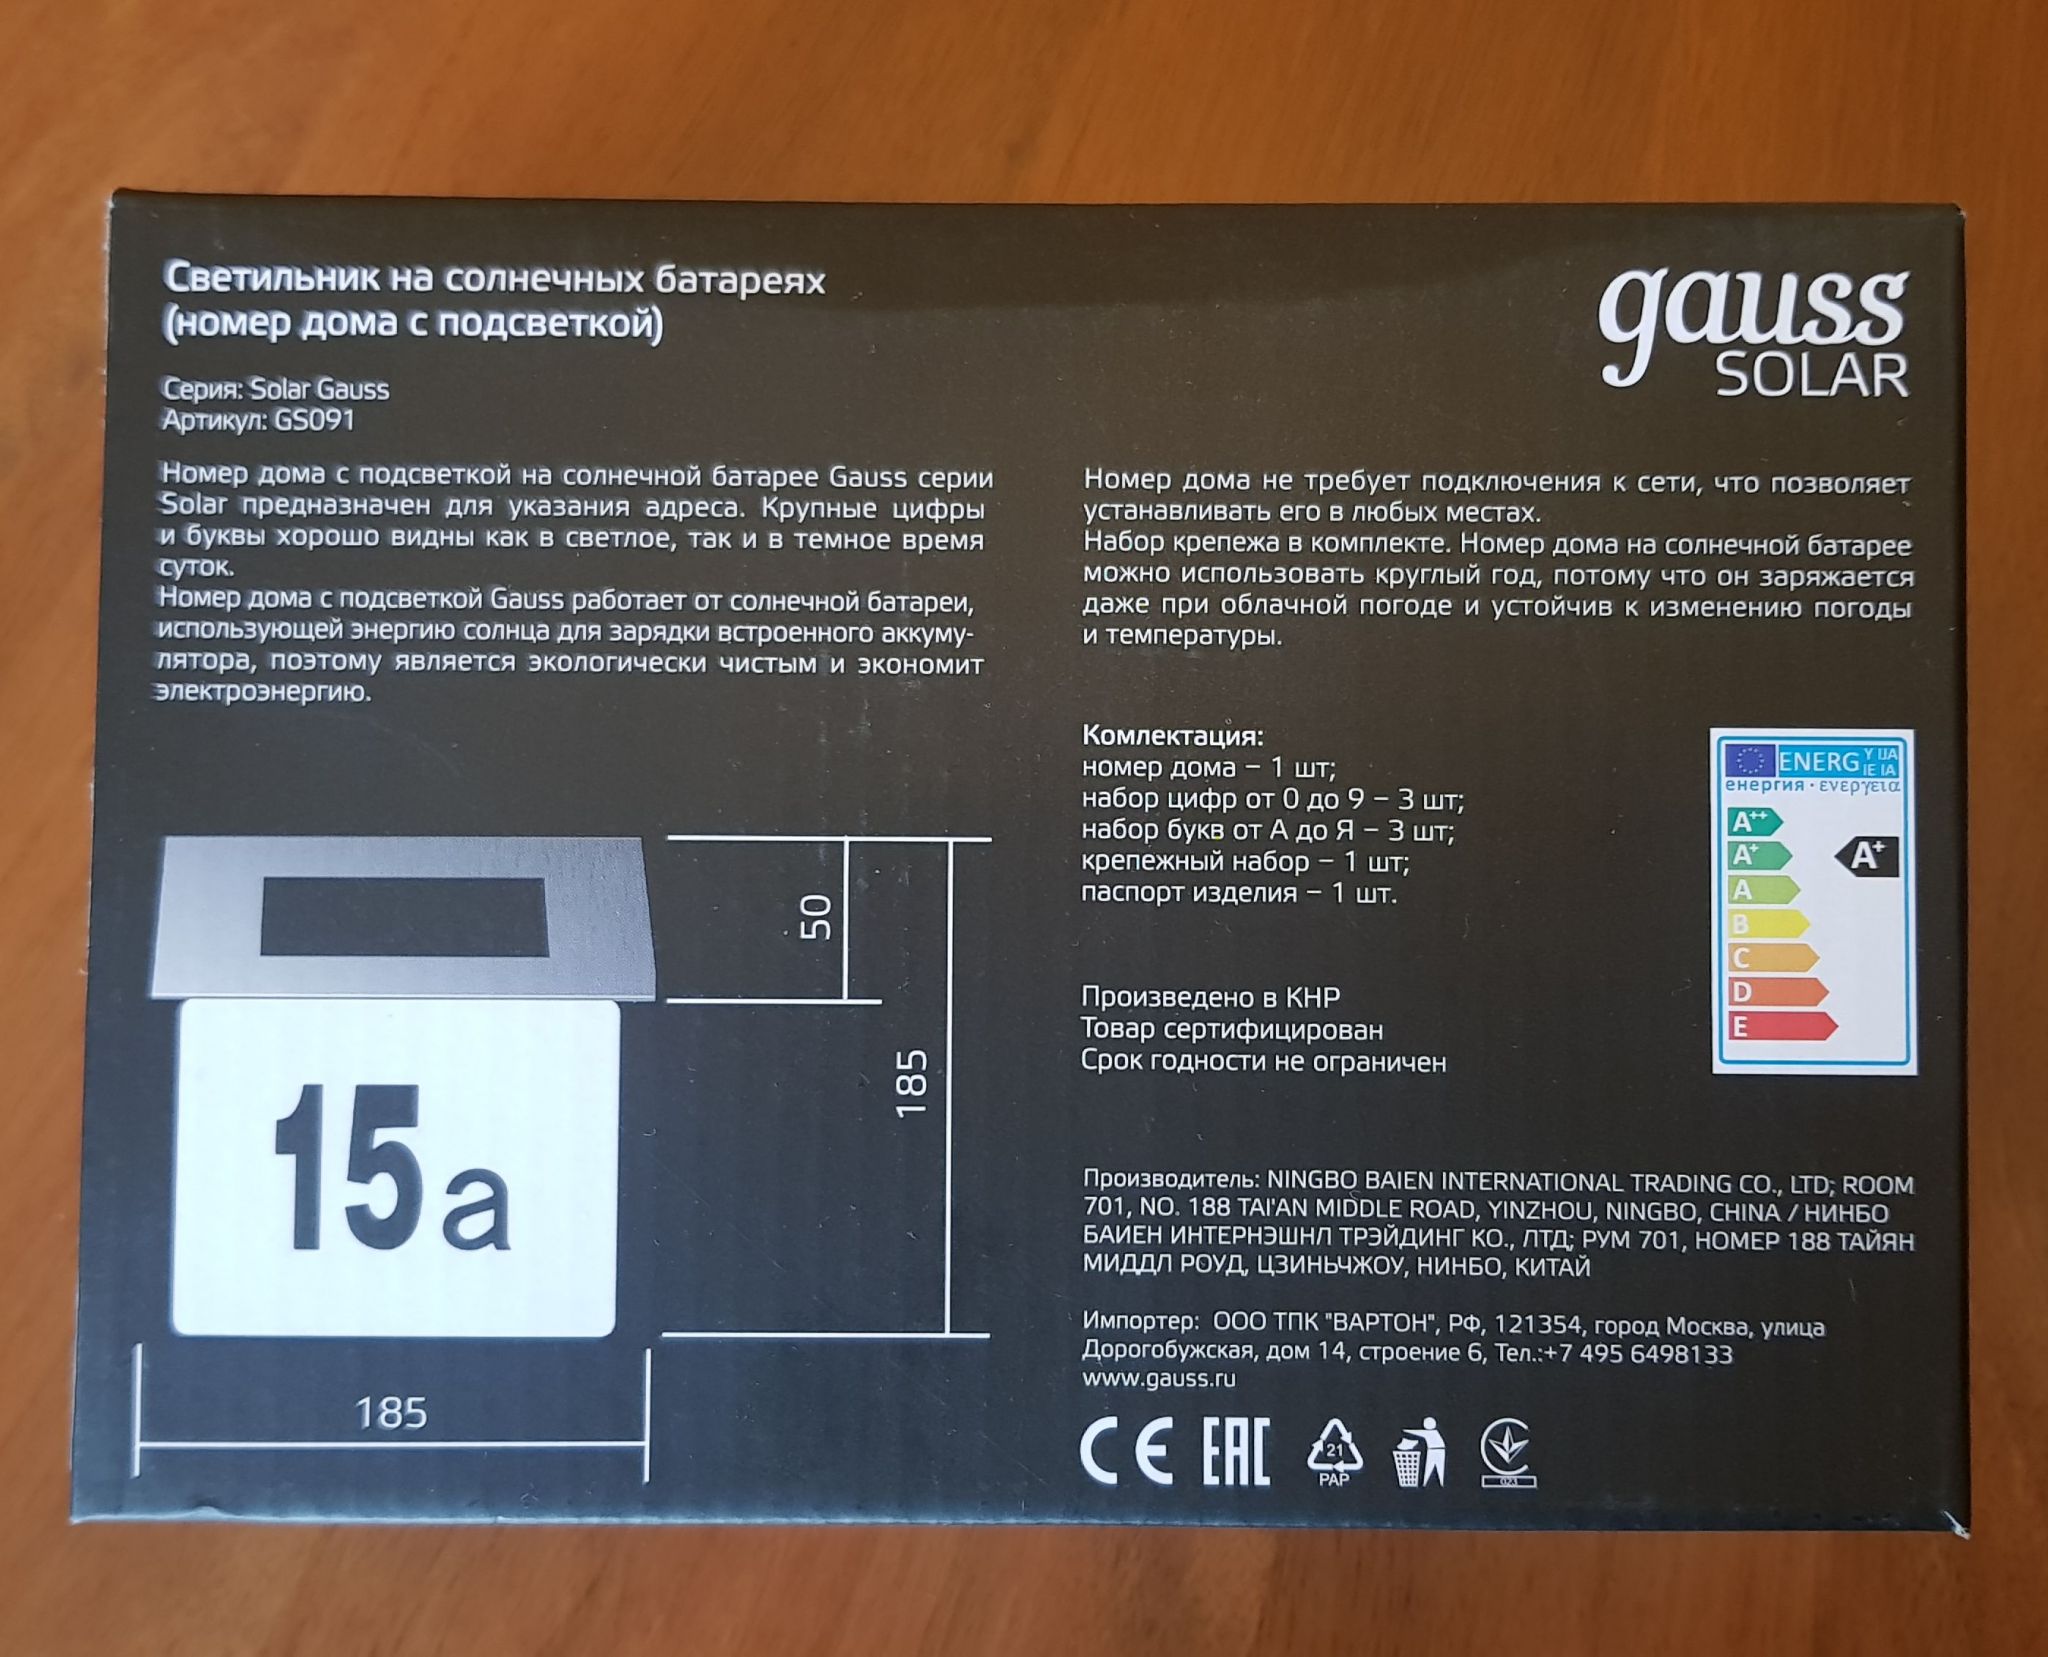 Купить номер дома на солнечной батарее Gauss Solar, 6500K, 1/12 GS091 GAUSS  в интернет-магазине ОНЛАЙН ТРЕЙД.РУ